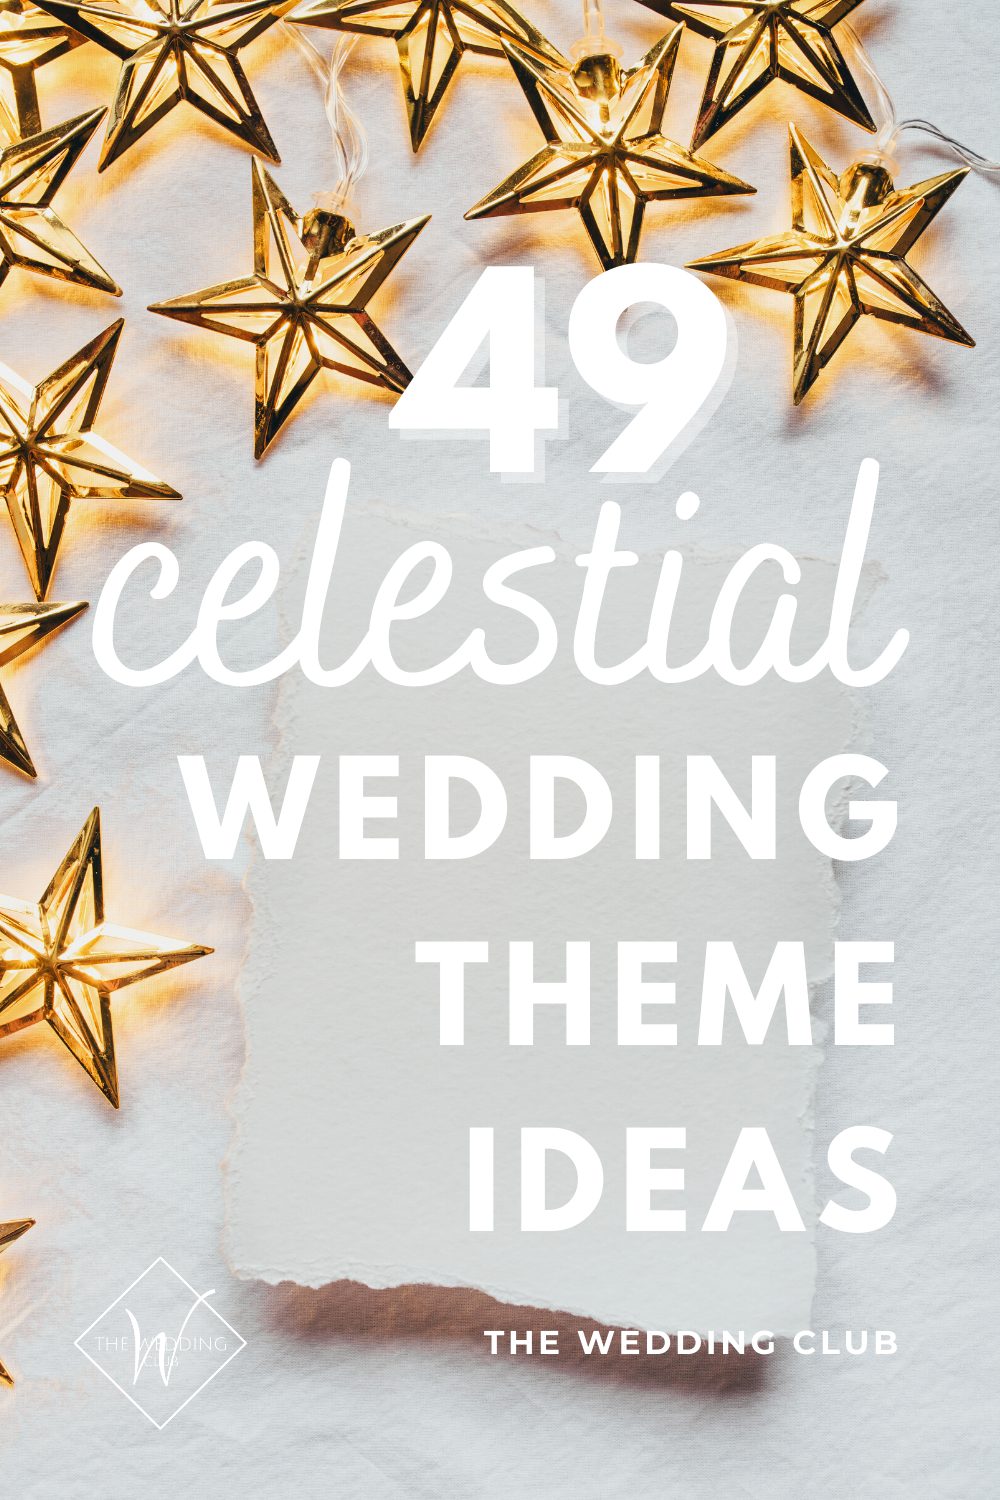 49 Sparkly celestial wedding theme ideas